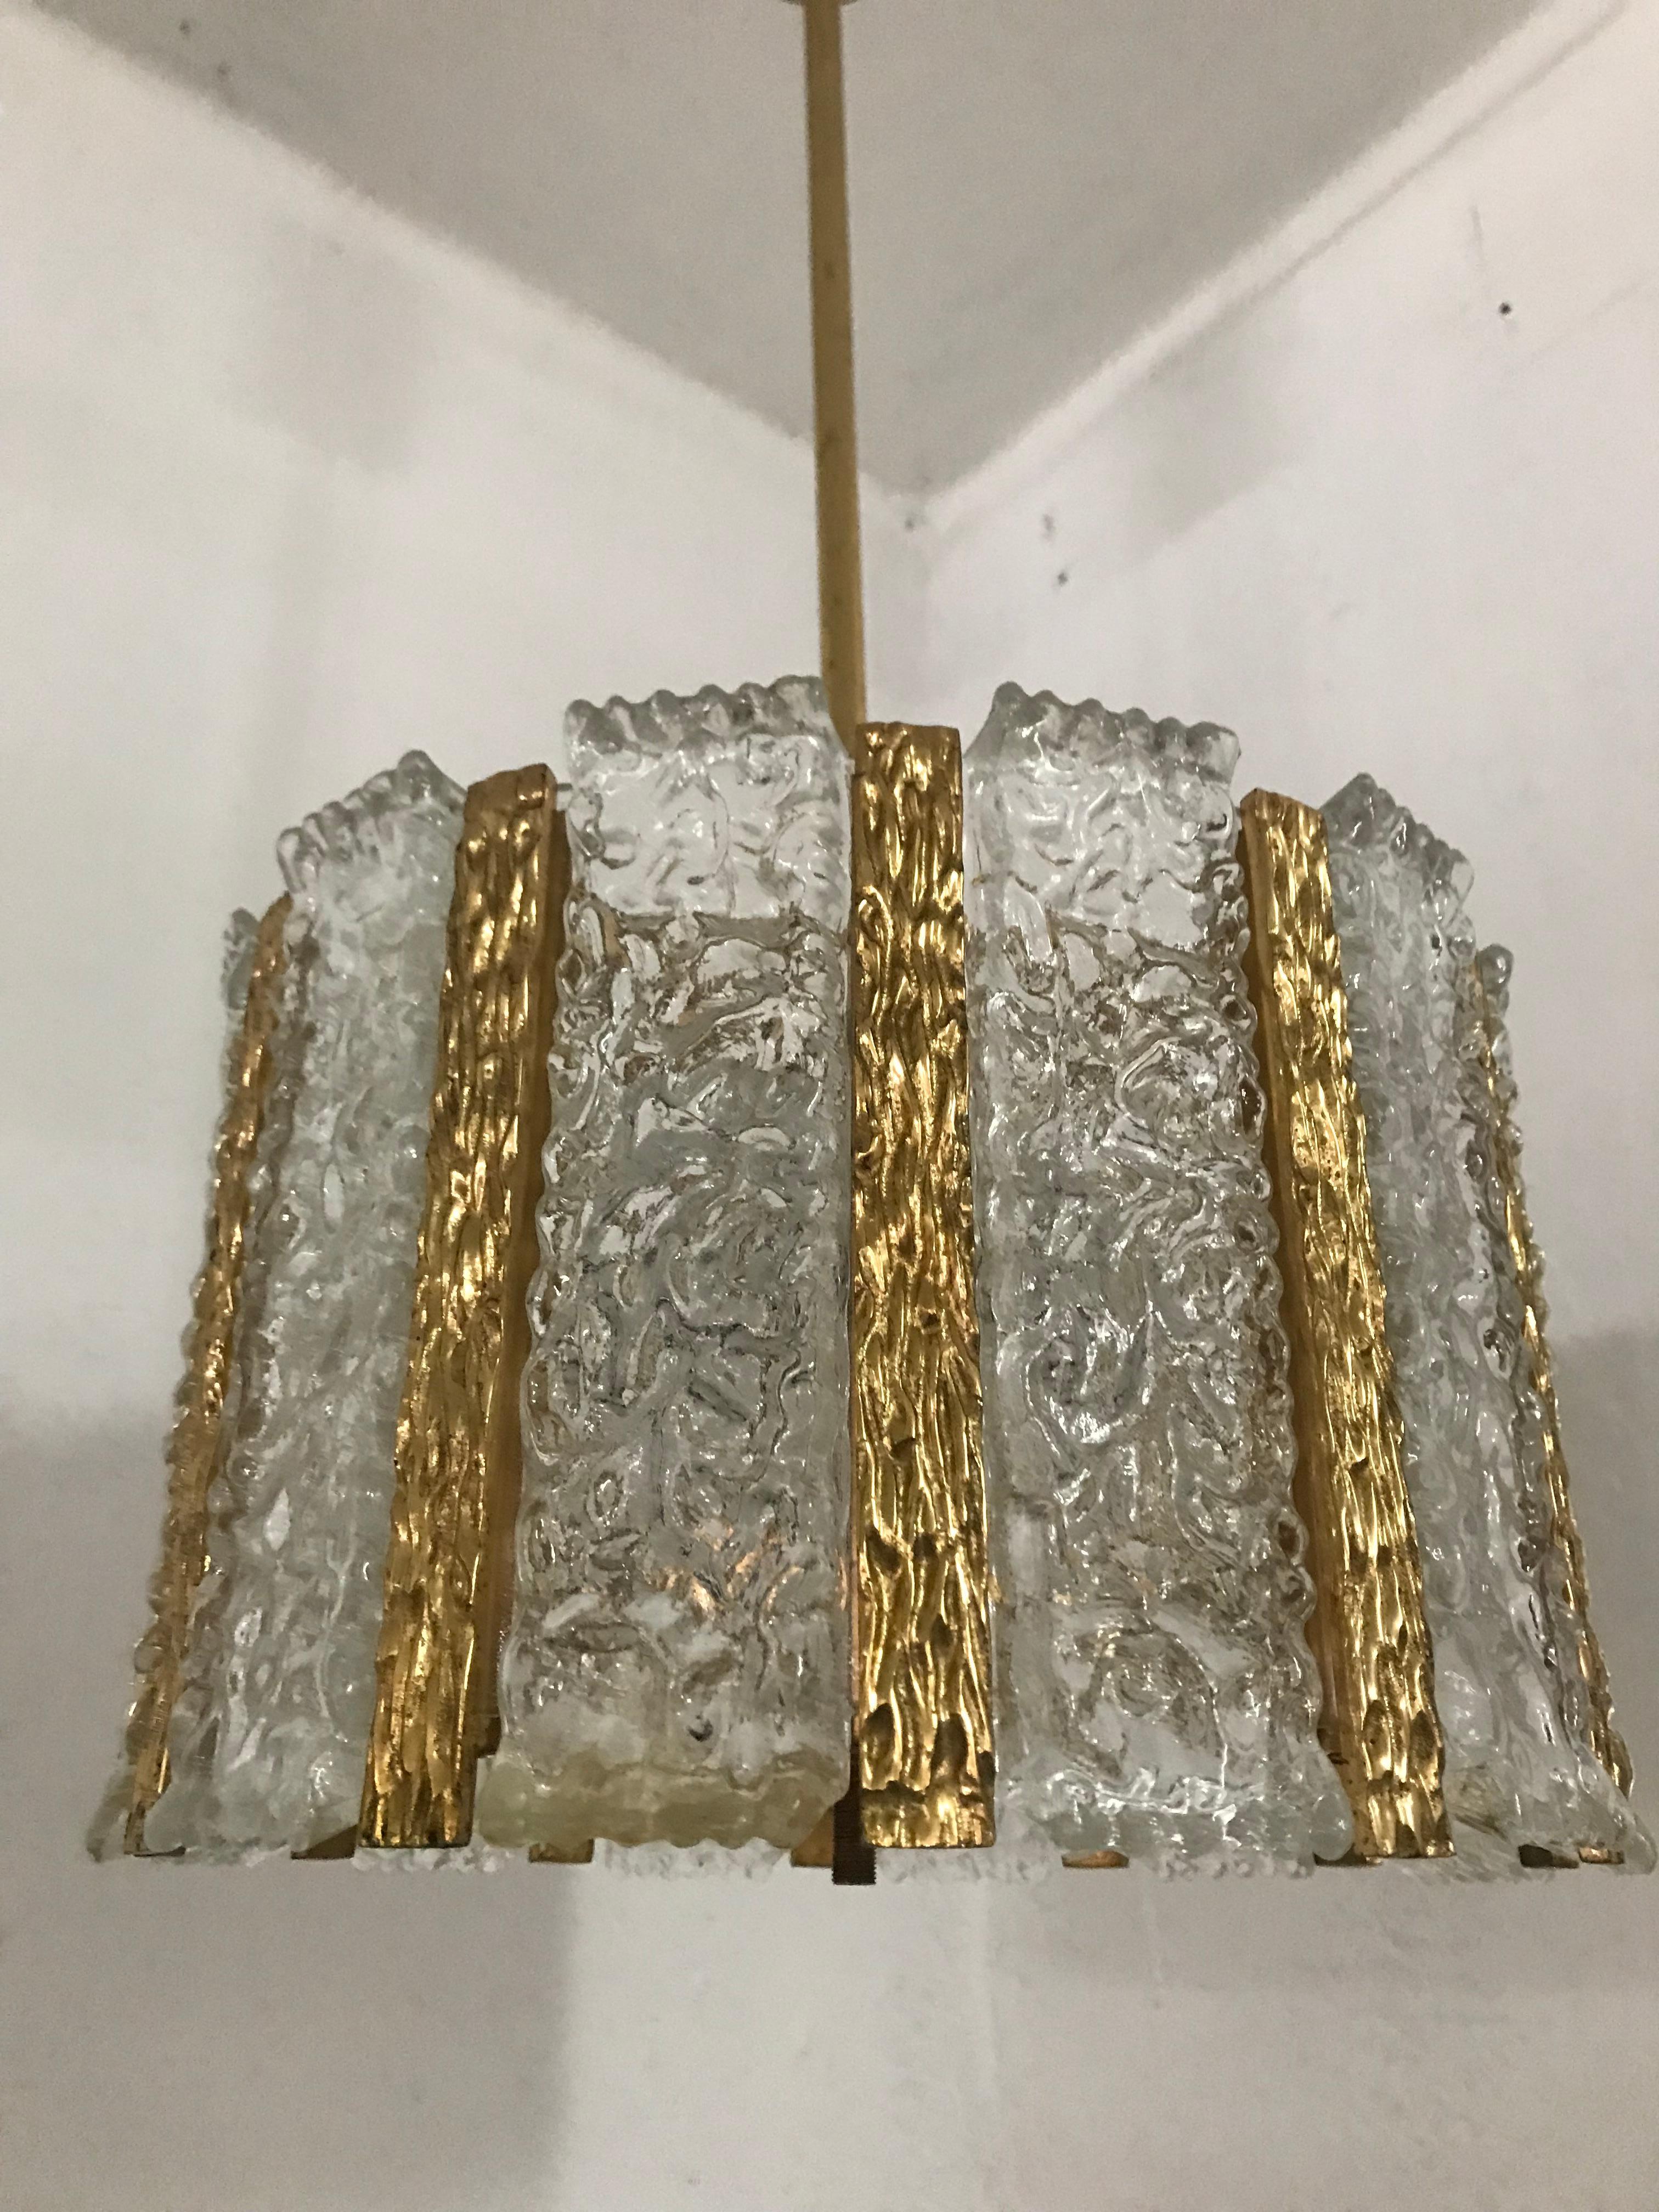 Vierflammige Pendelleuchte aus Milchglas und vergoldetem Messing von J.T. Mid-Century Modern Kalmar, Österreich, ca. 1960er Jahre.

Bei näherer Betrachtung sind die vergoldeten Bereiche leicht verblichen.
 